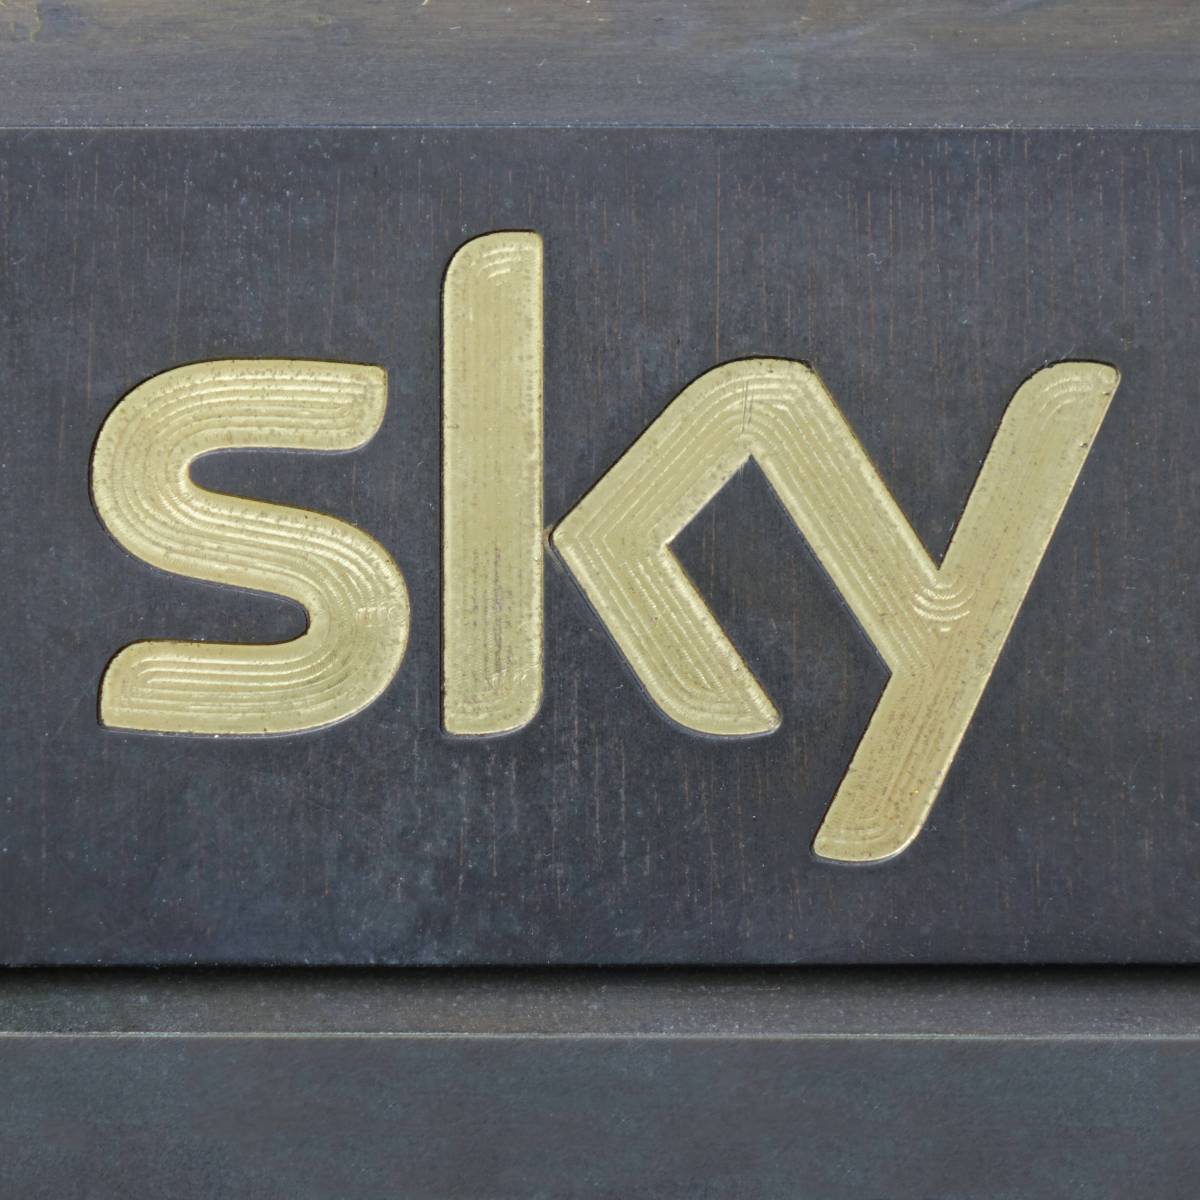 Sky: Gerüchte um Verkauf- jetzt herrscht bittere Gewissheit